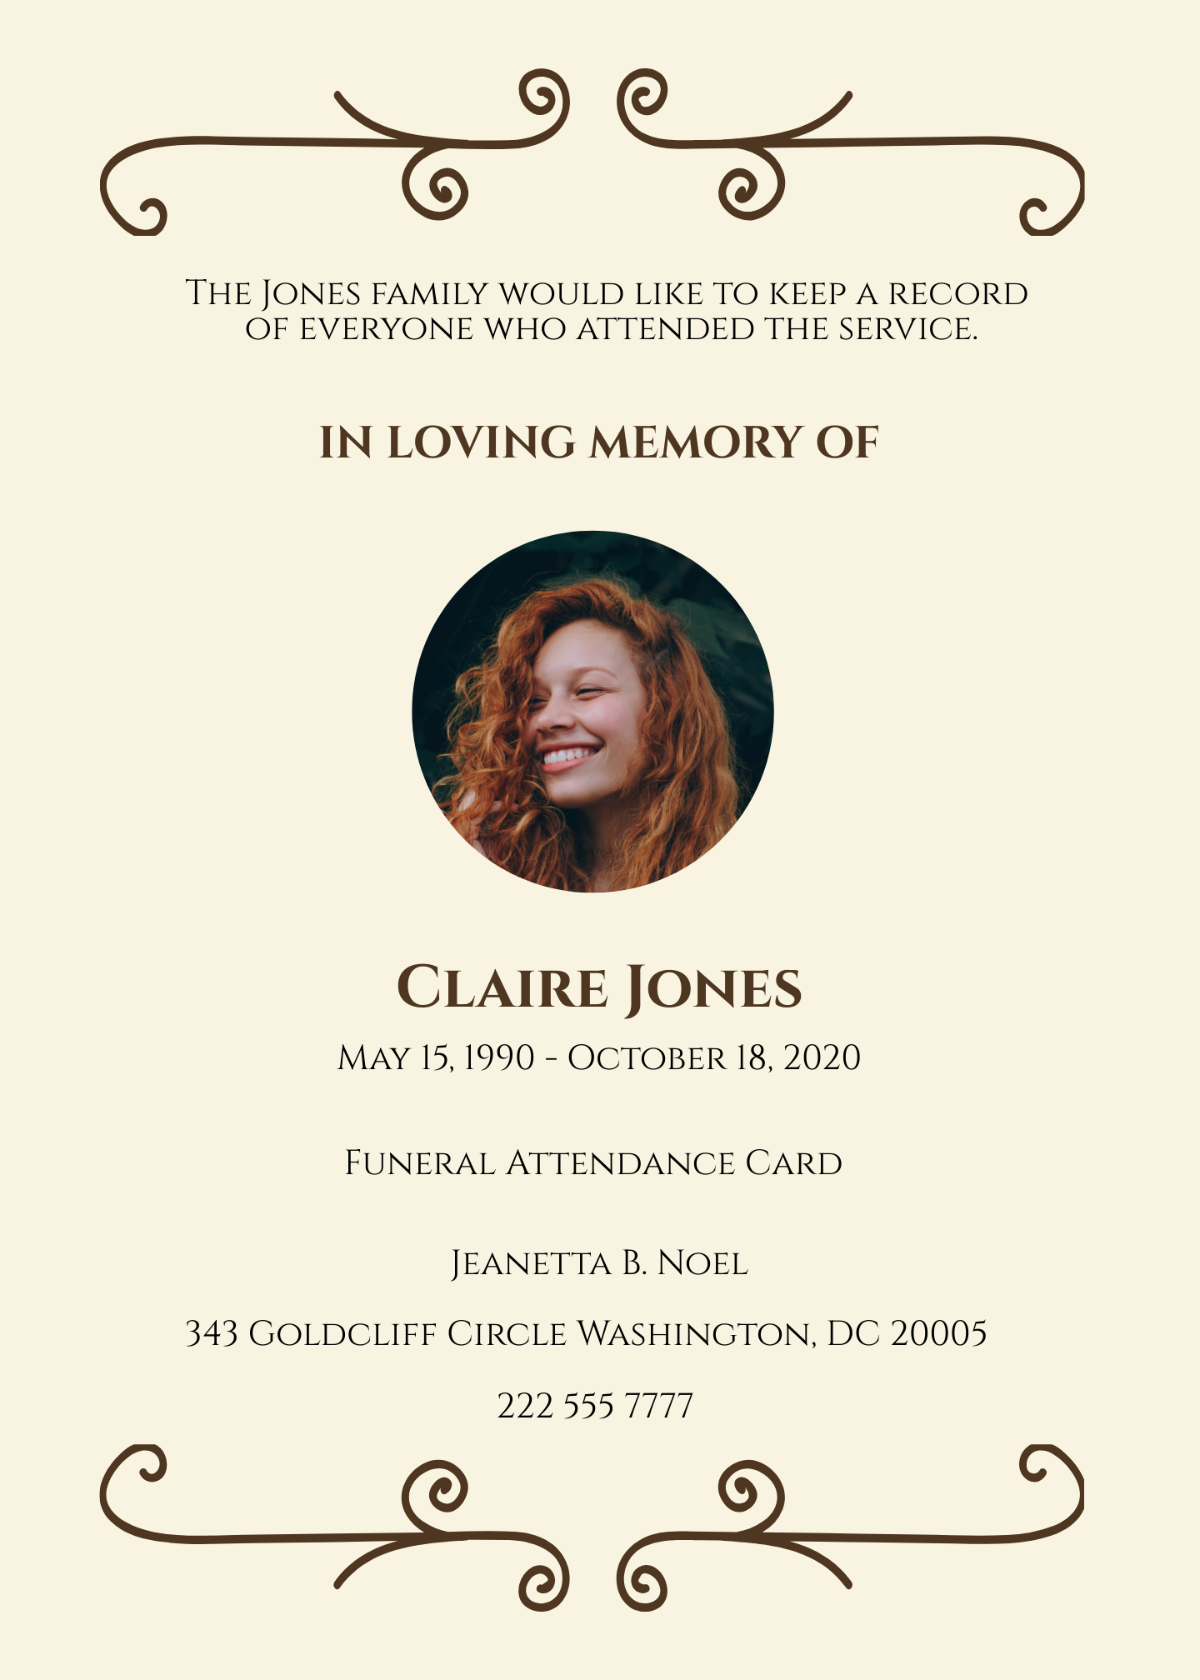 Funeral Attendance Card